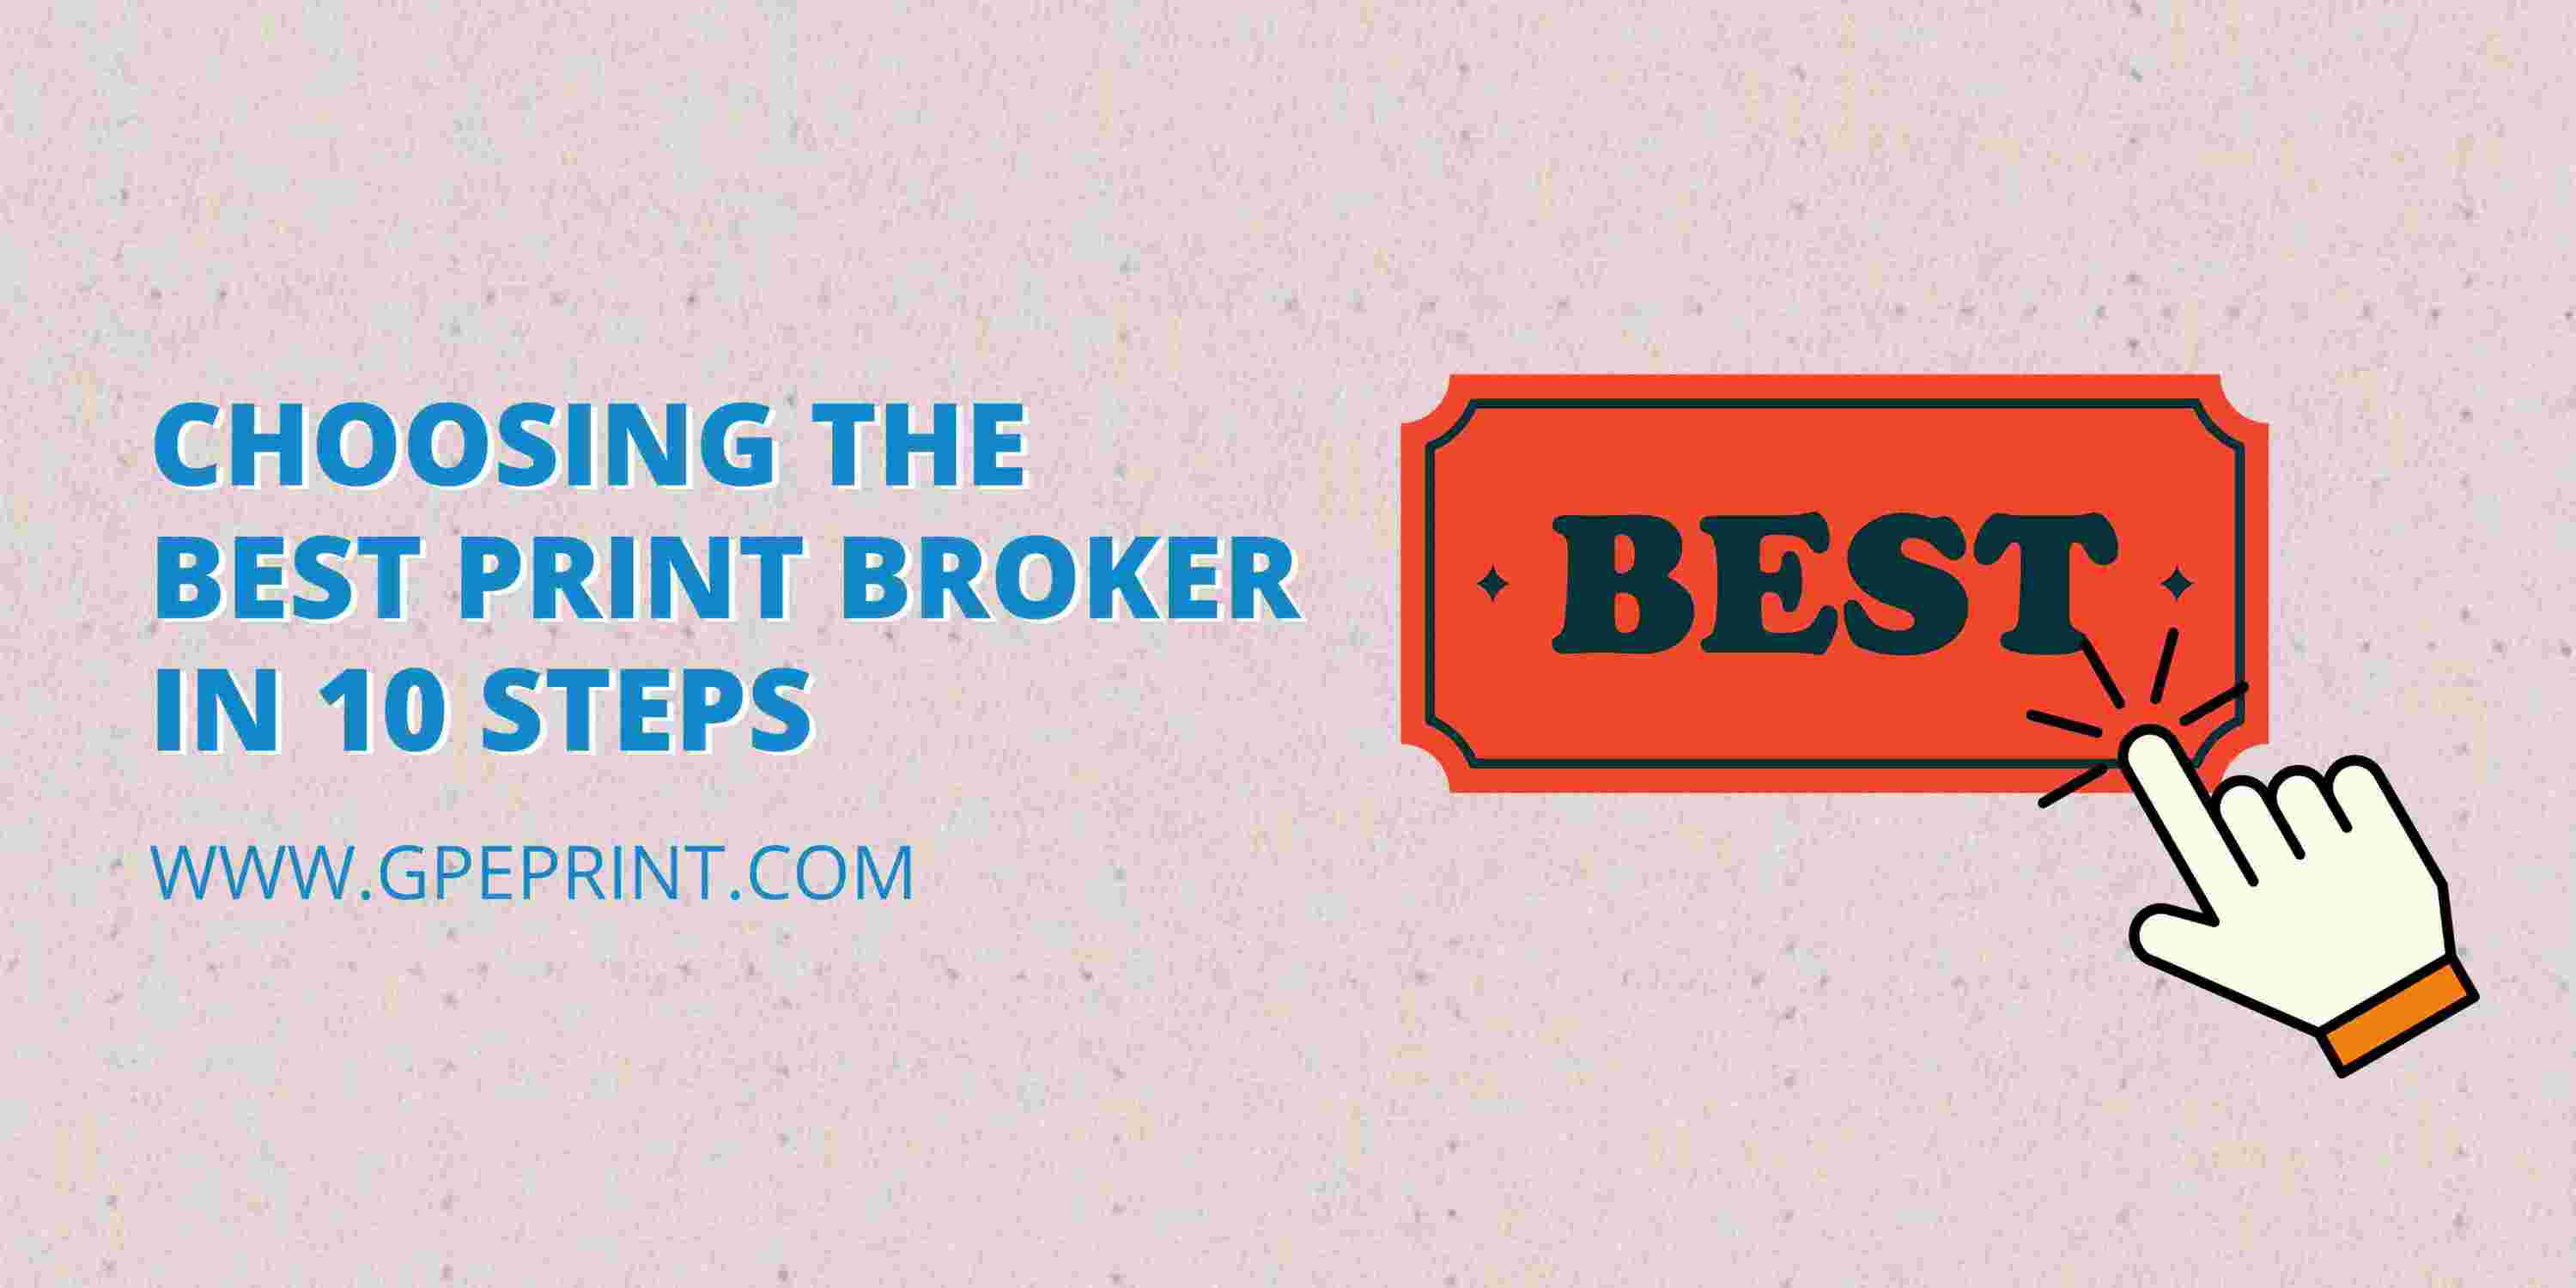 Choosing the Best Print Broker in 10 Steps